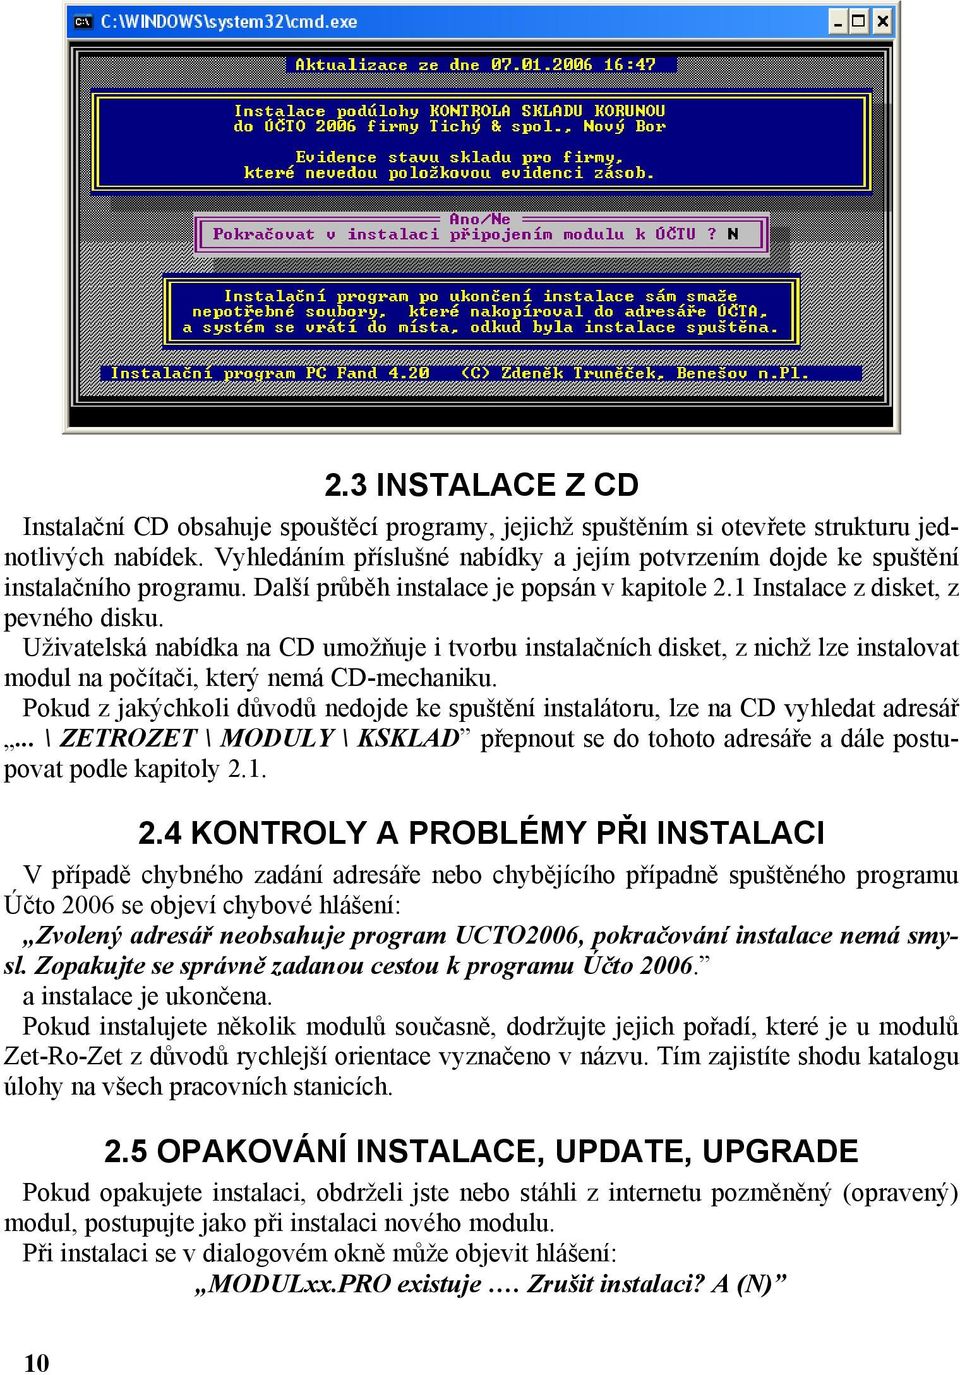 Uživatelská nabídka na CD umožňuje i tvorbu instalačních disket, z nichž lze instalovat modul na počítači, který nemá CD-mechaniku.